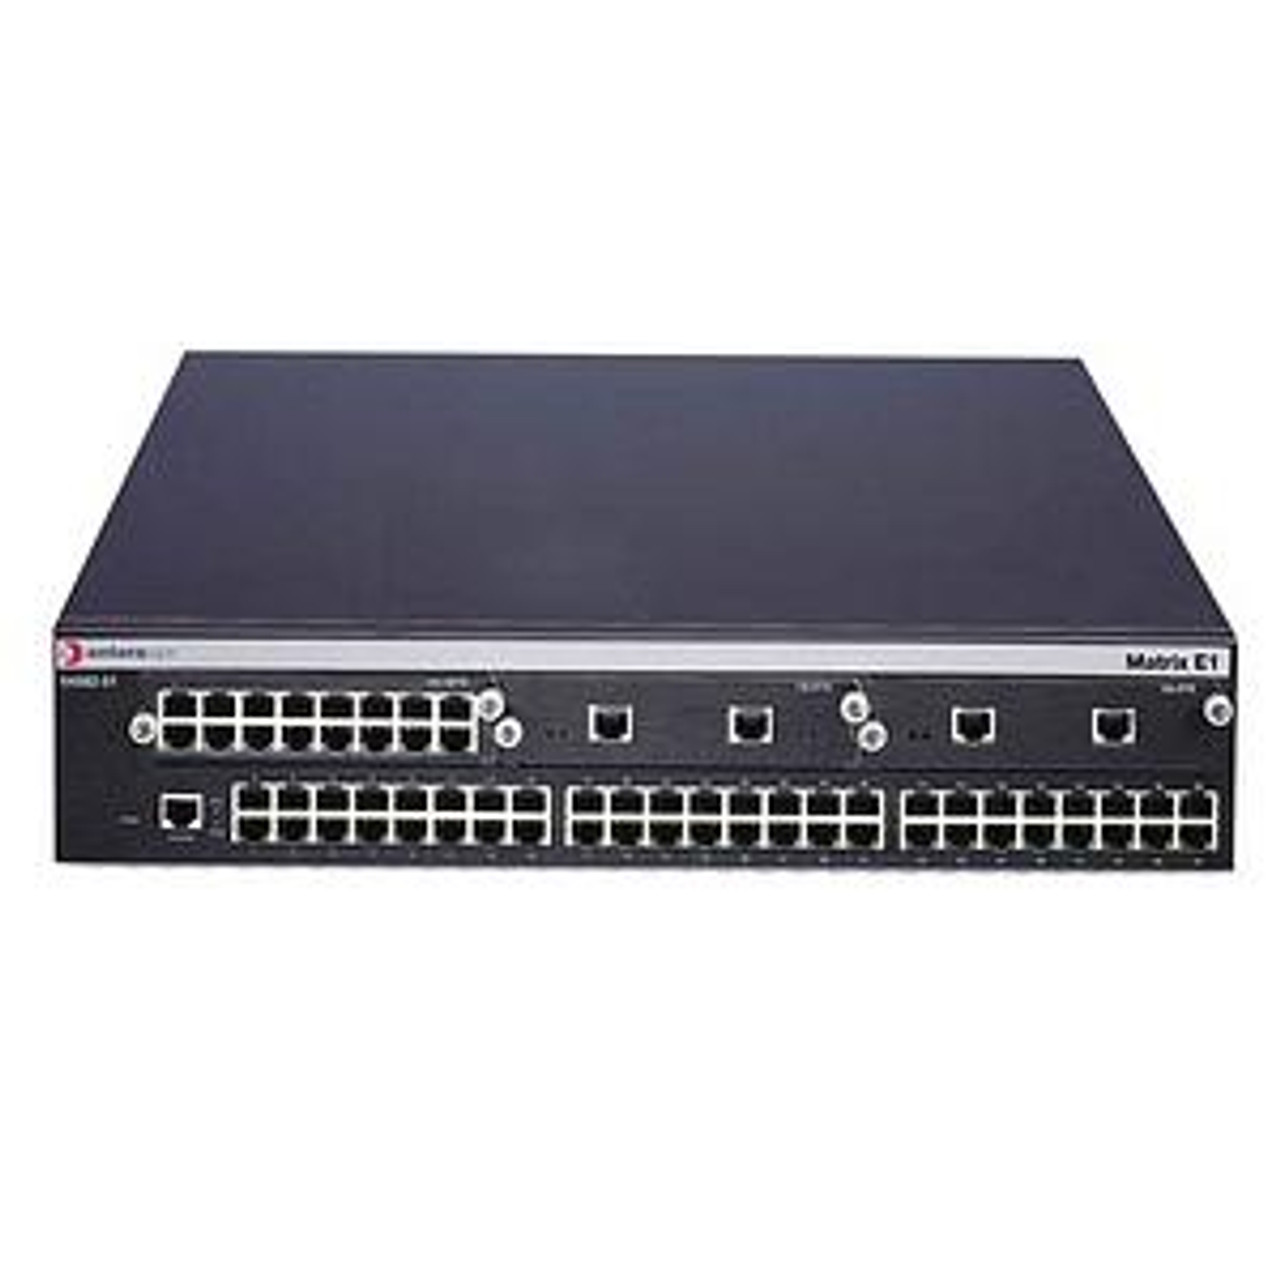 1H582-51-G Enterasys Matrix 1H582-51 E1 Workgroup Ethernet Switch 48 x 10/100Base-TX (Refurbished)